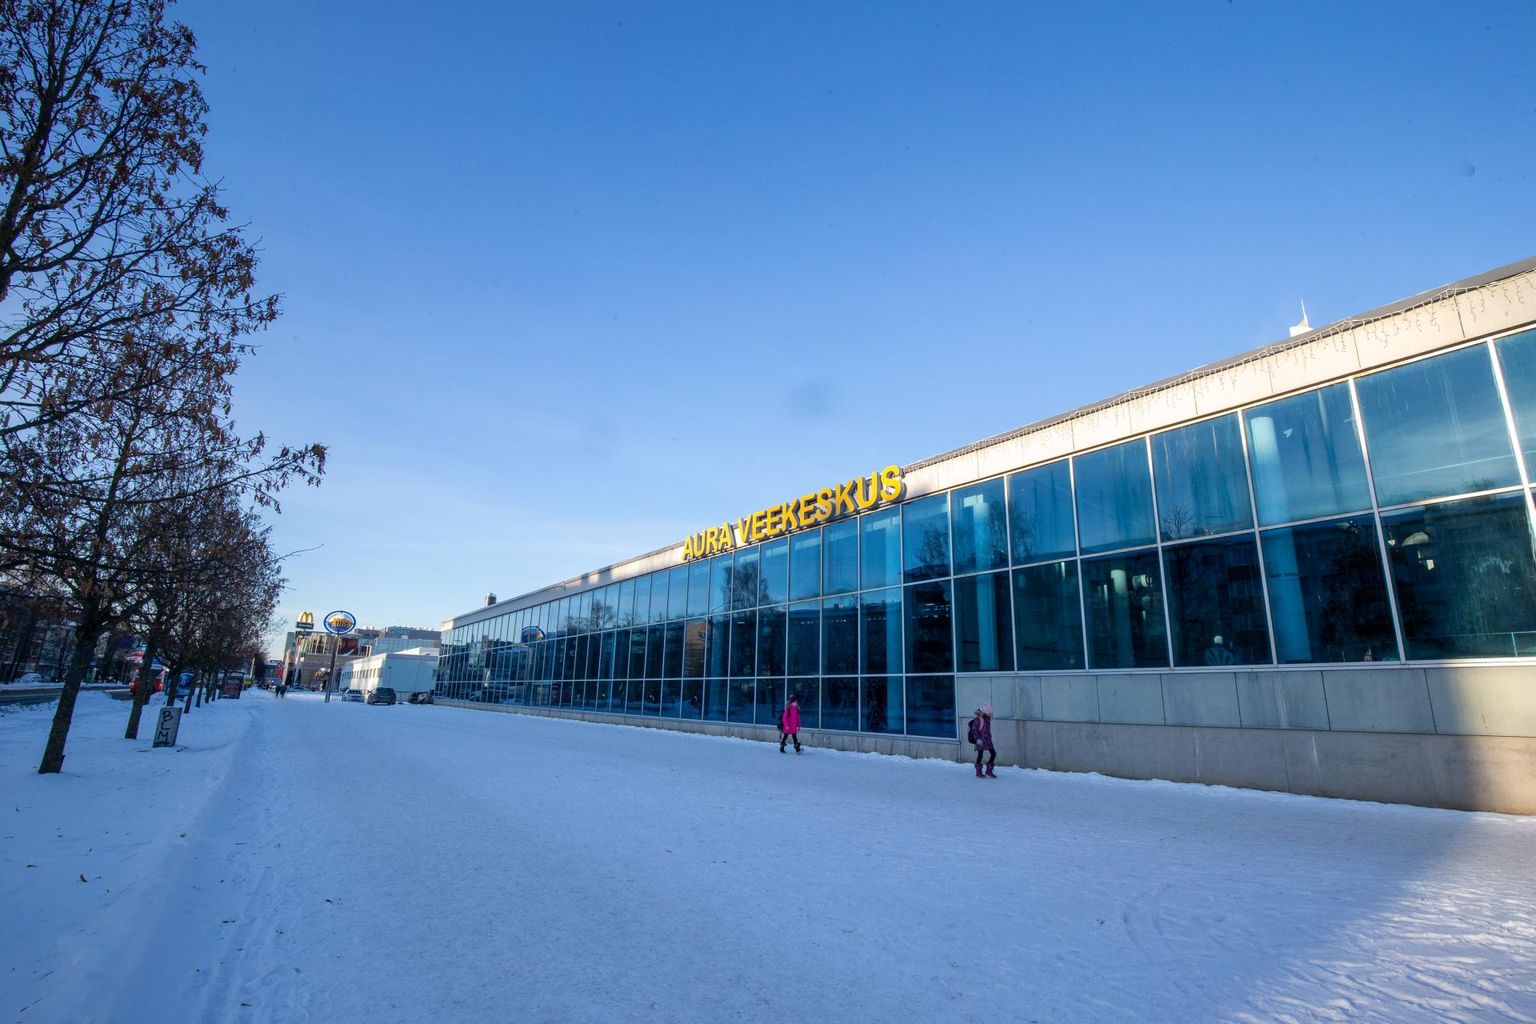 Nagu kõik teised Eesti veekeskused ja spaad, sulges ka Aura uksed kaheks nädalaks ja saatis töötajad koju.